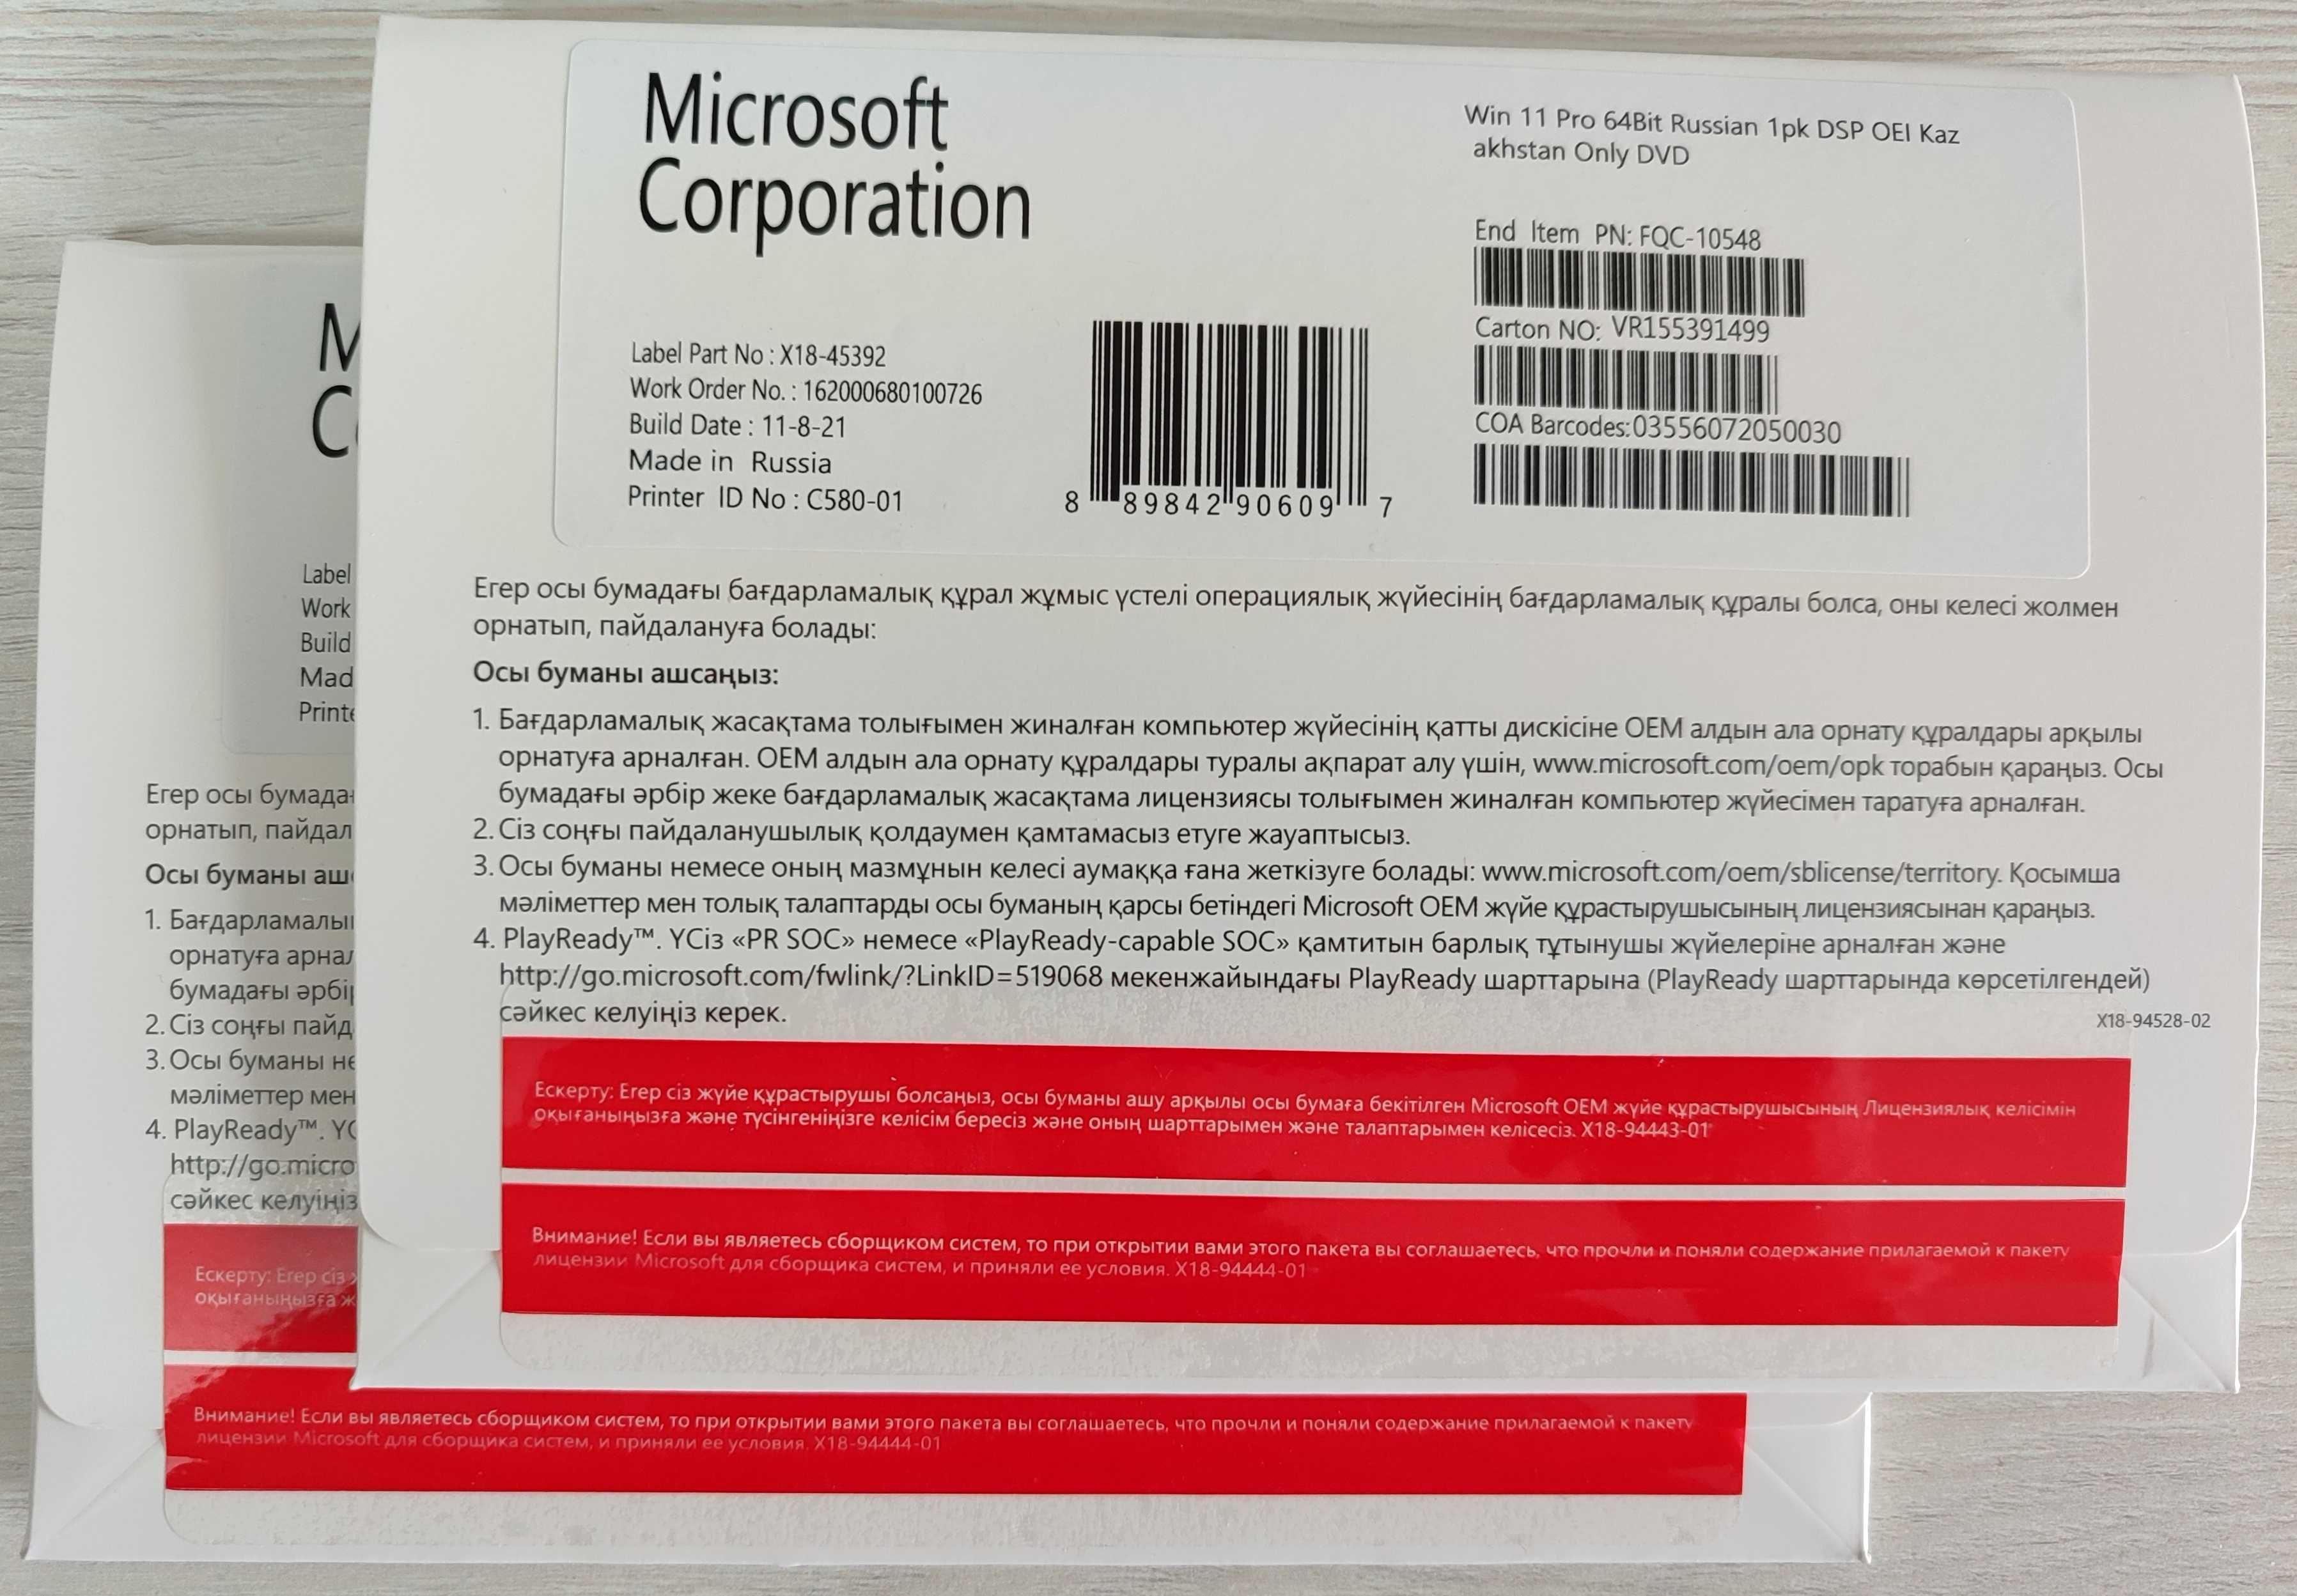 Windows 11 Pro OEM Конверт для Казахстана с диском